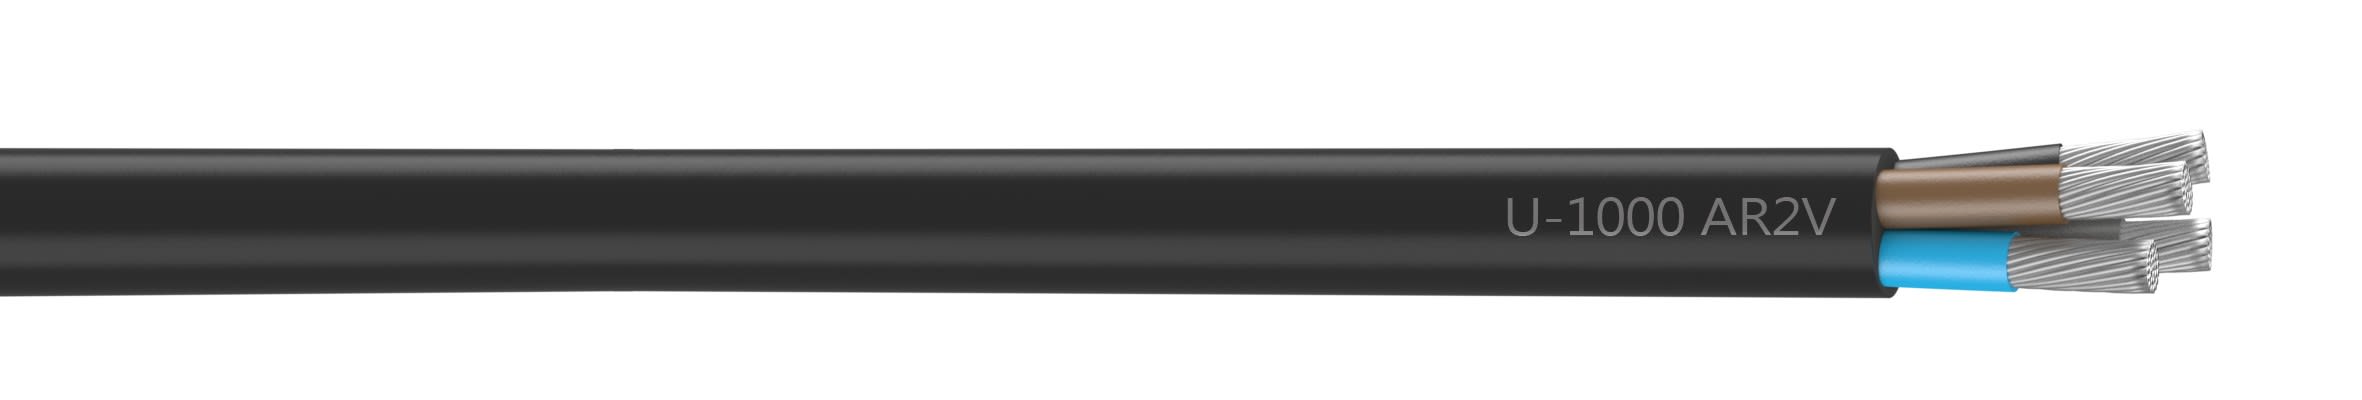 Nexans - Câble rigide U-1000 AR2V aluminium 4x50 longueur à la coupe